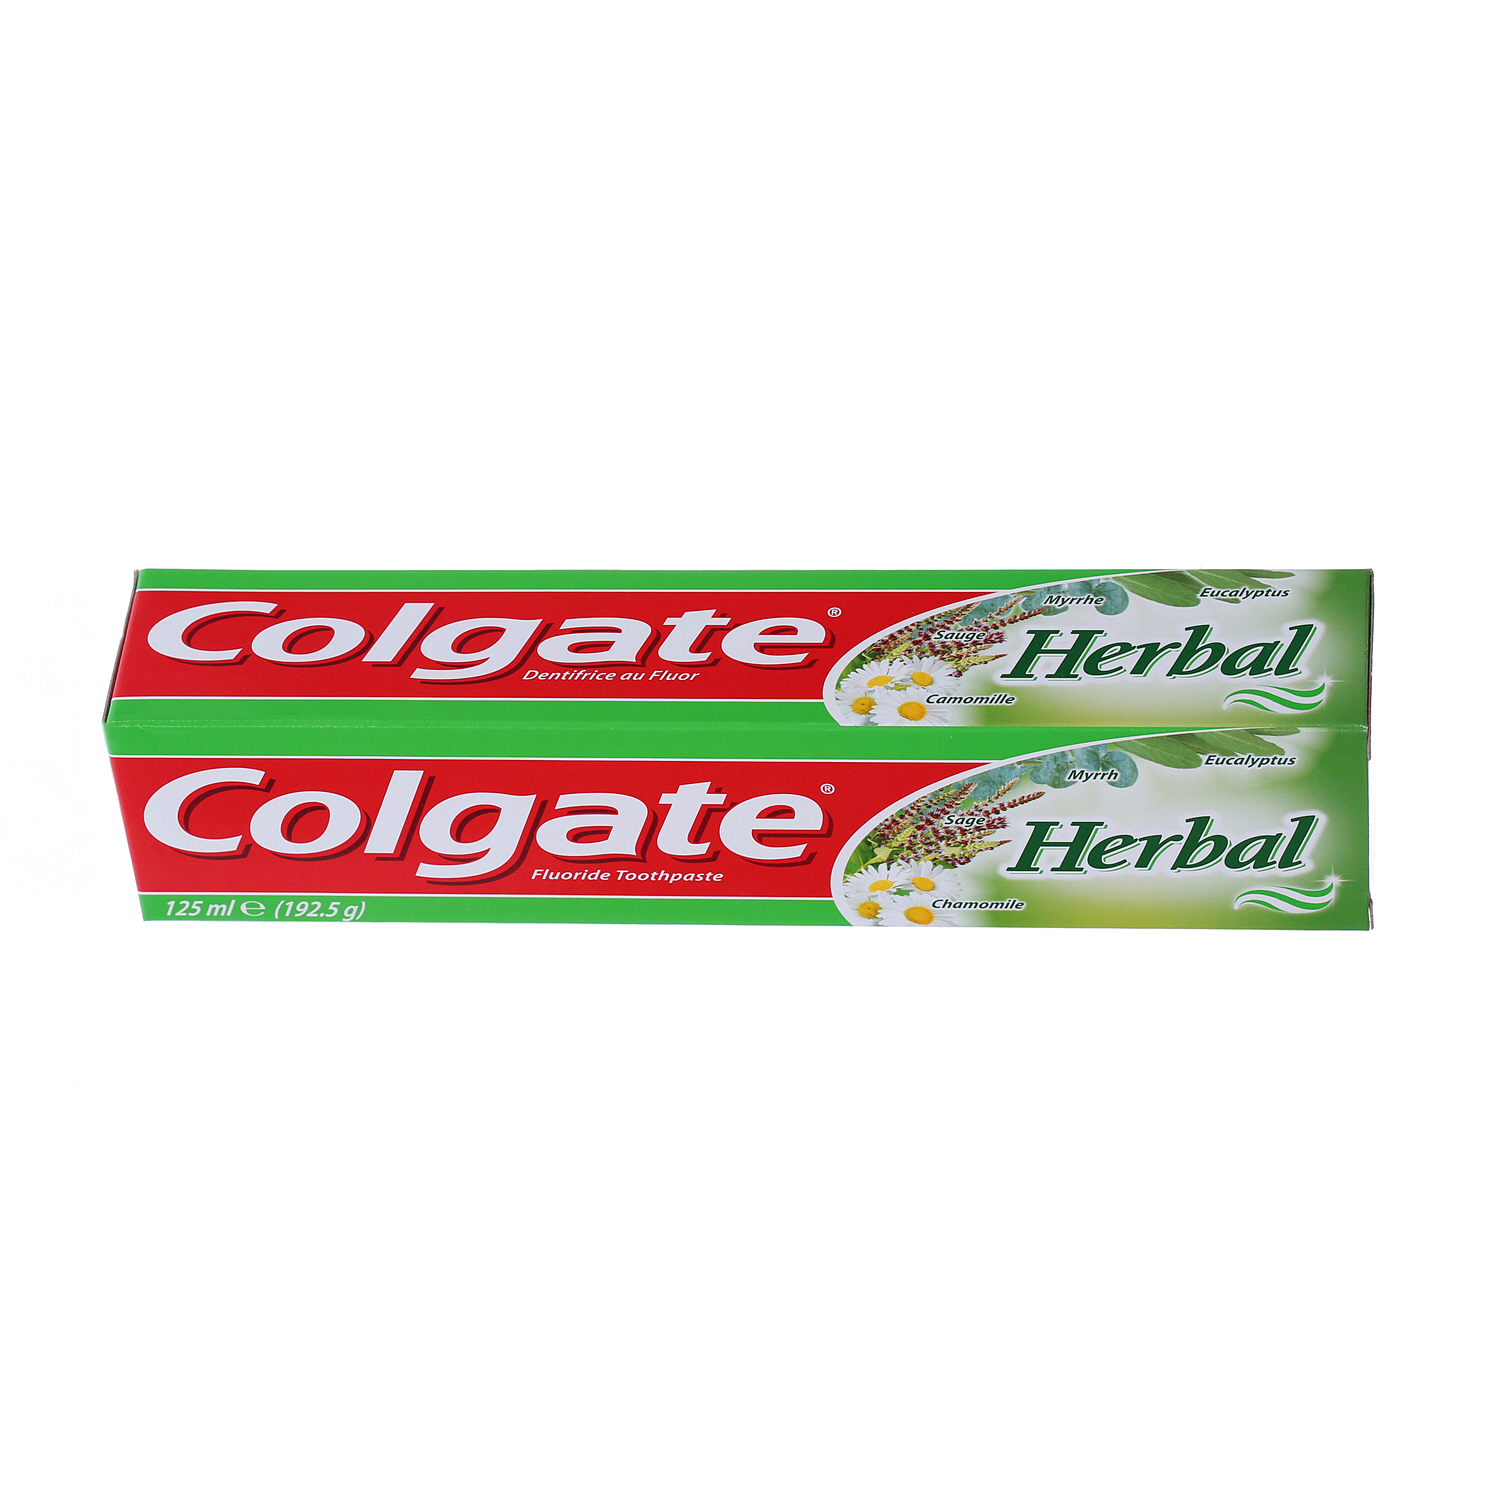 Colgate Toothpaste Herbal 125 ml